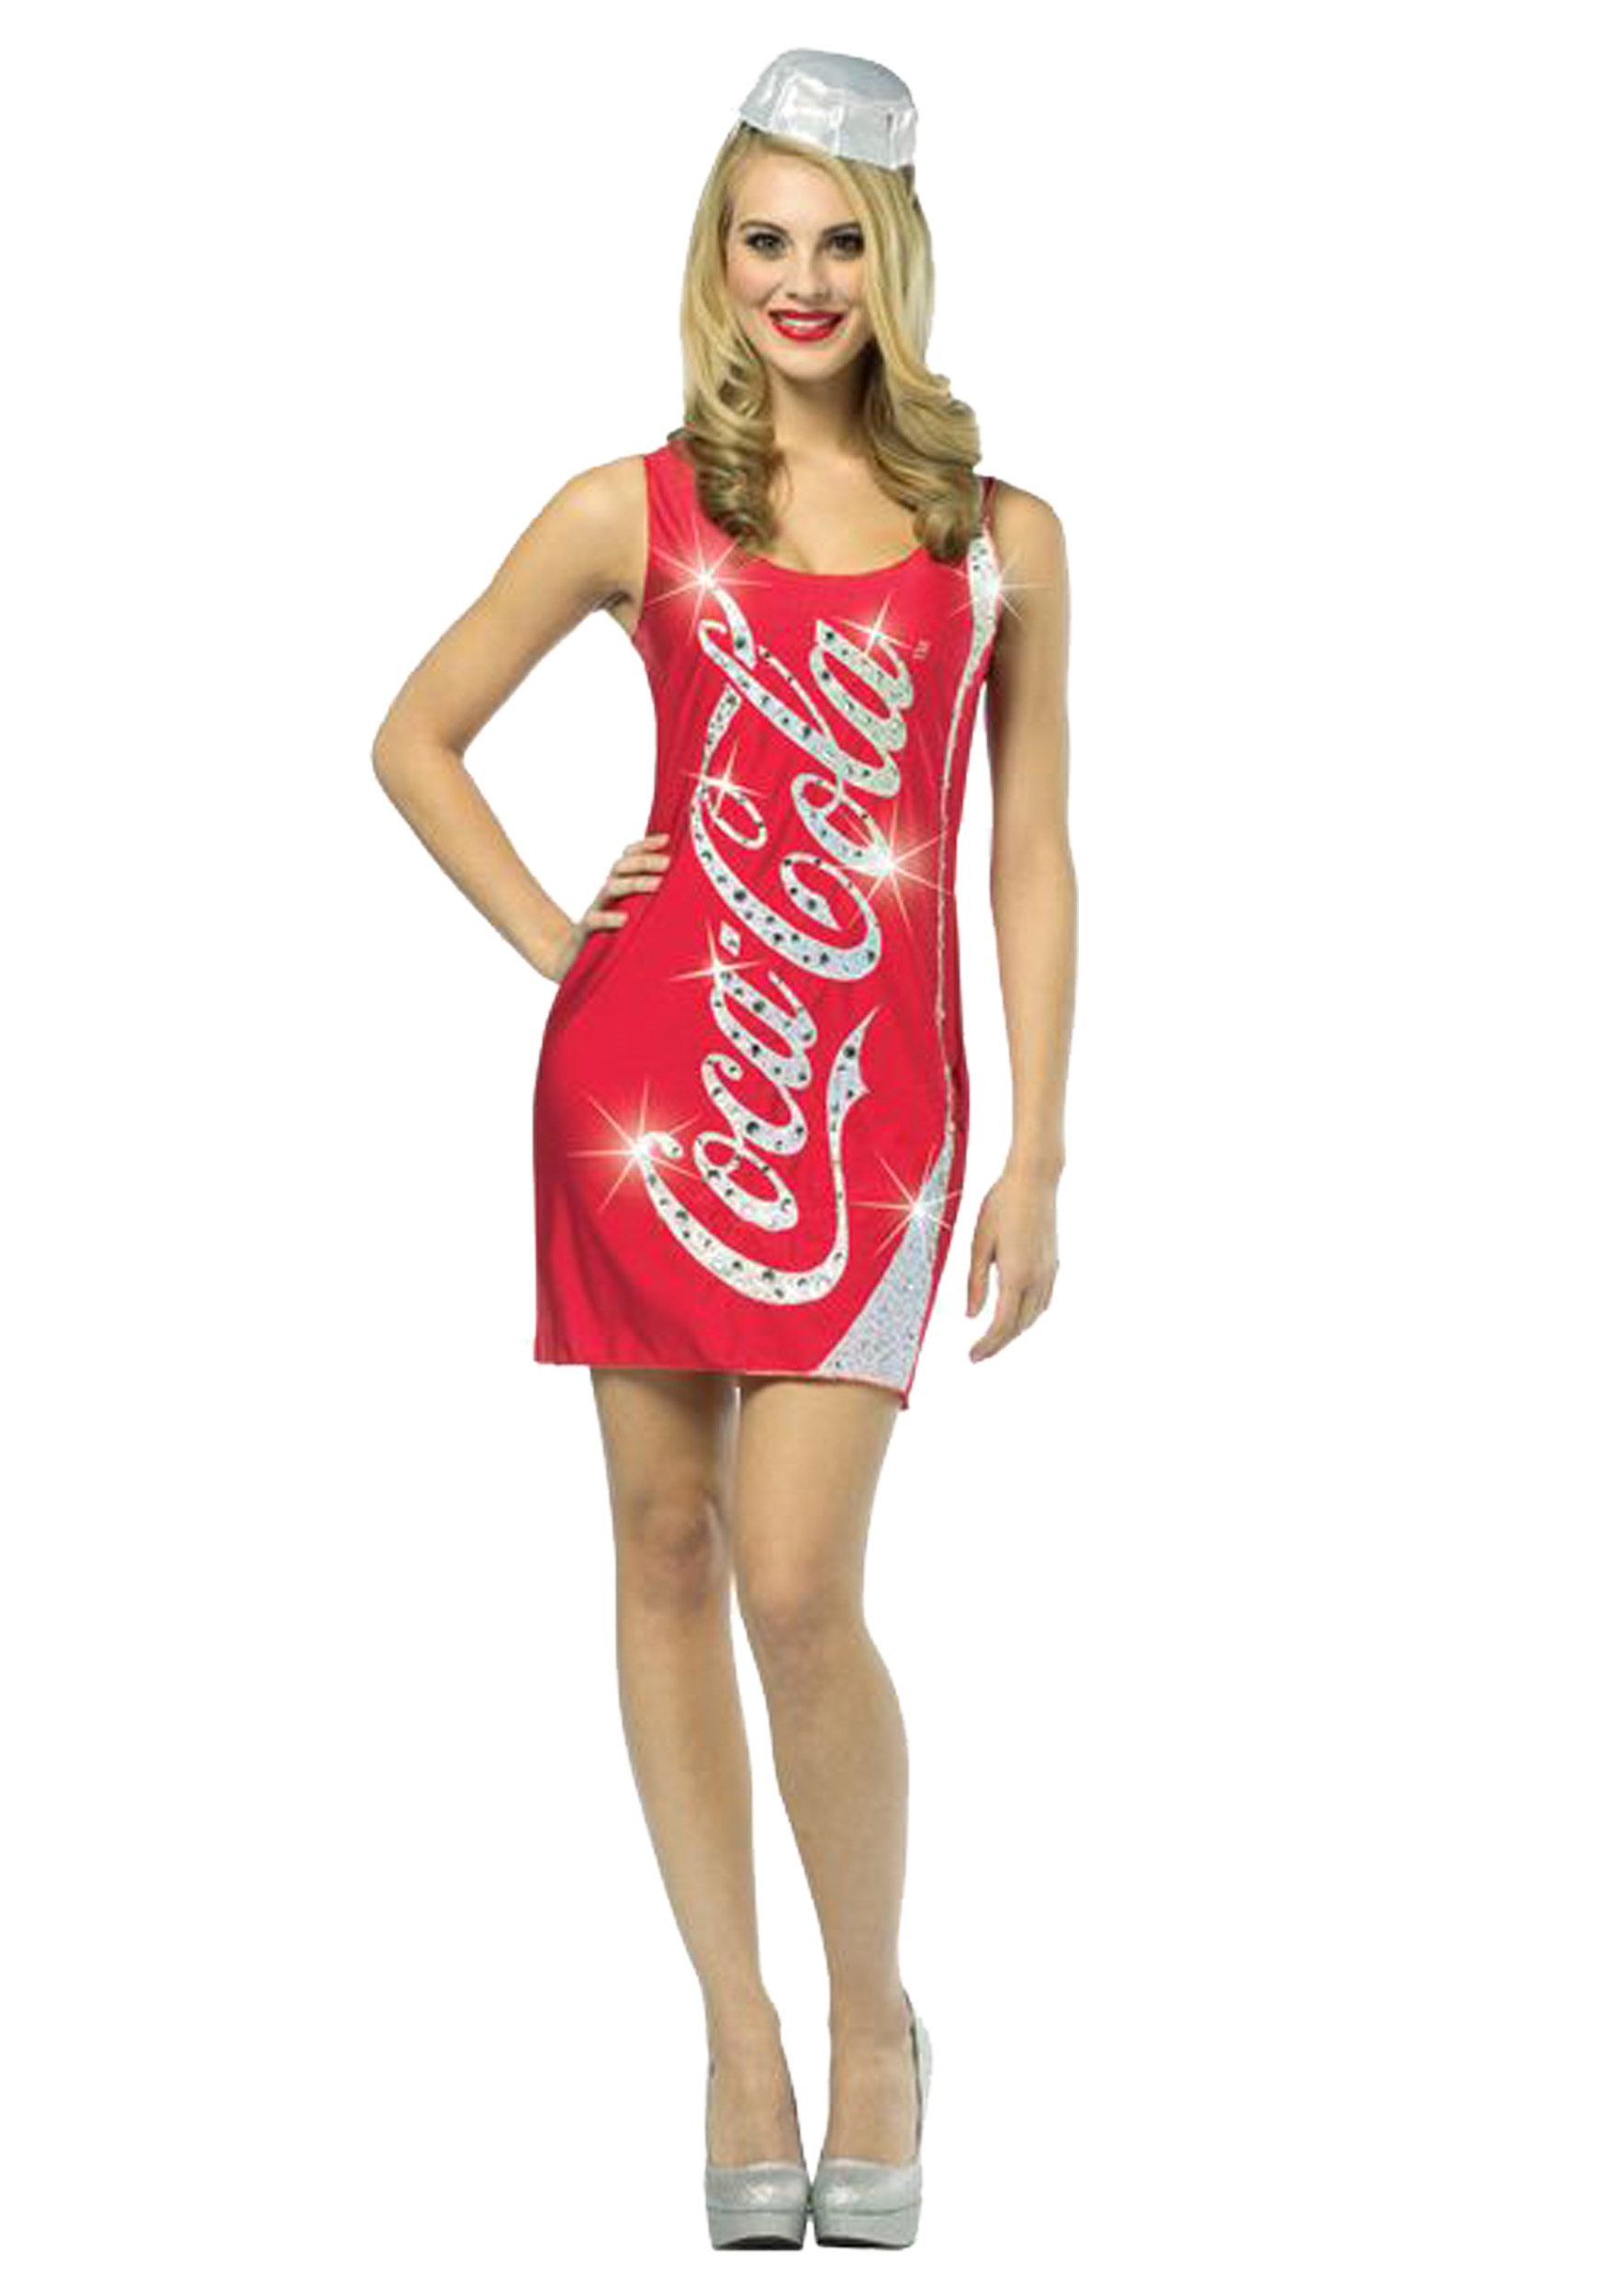 Coca-Cola Glitz Dress - Halloween Costumes.